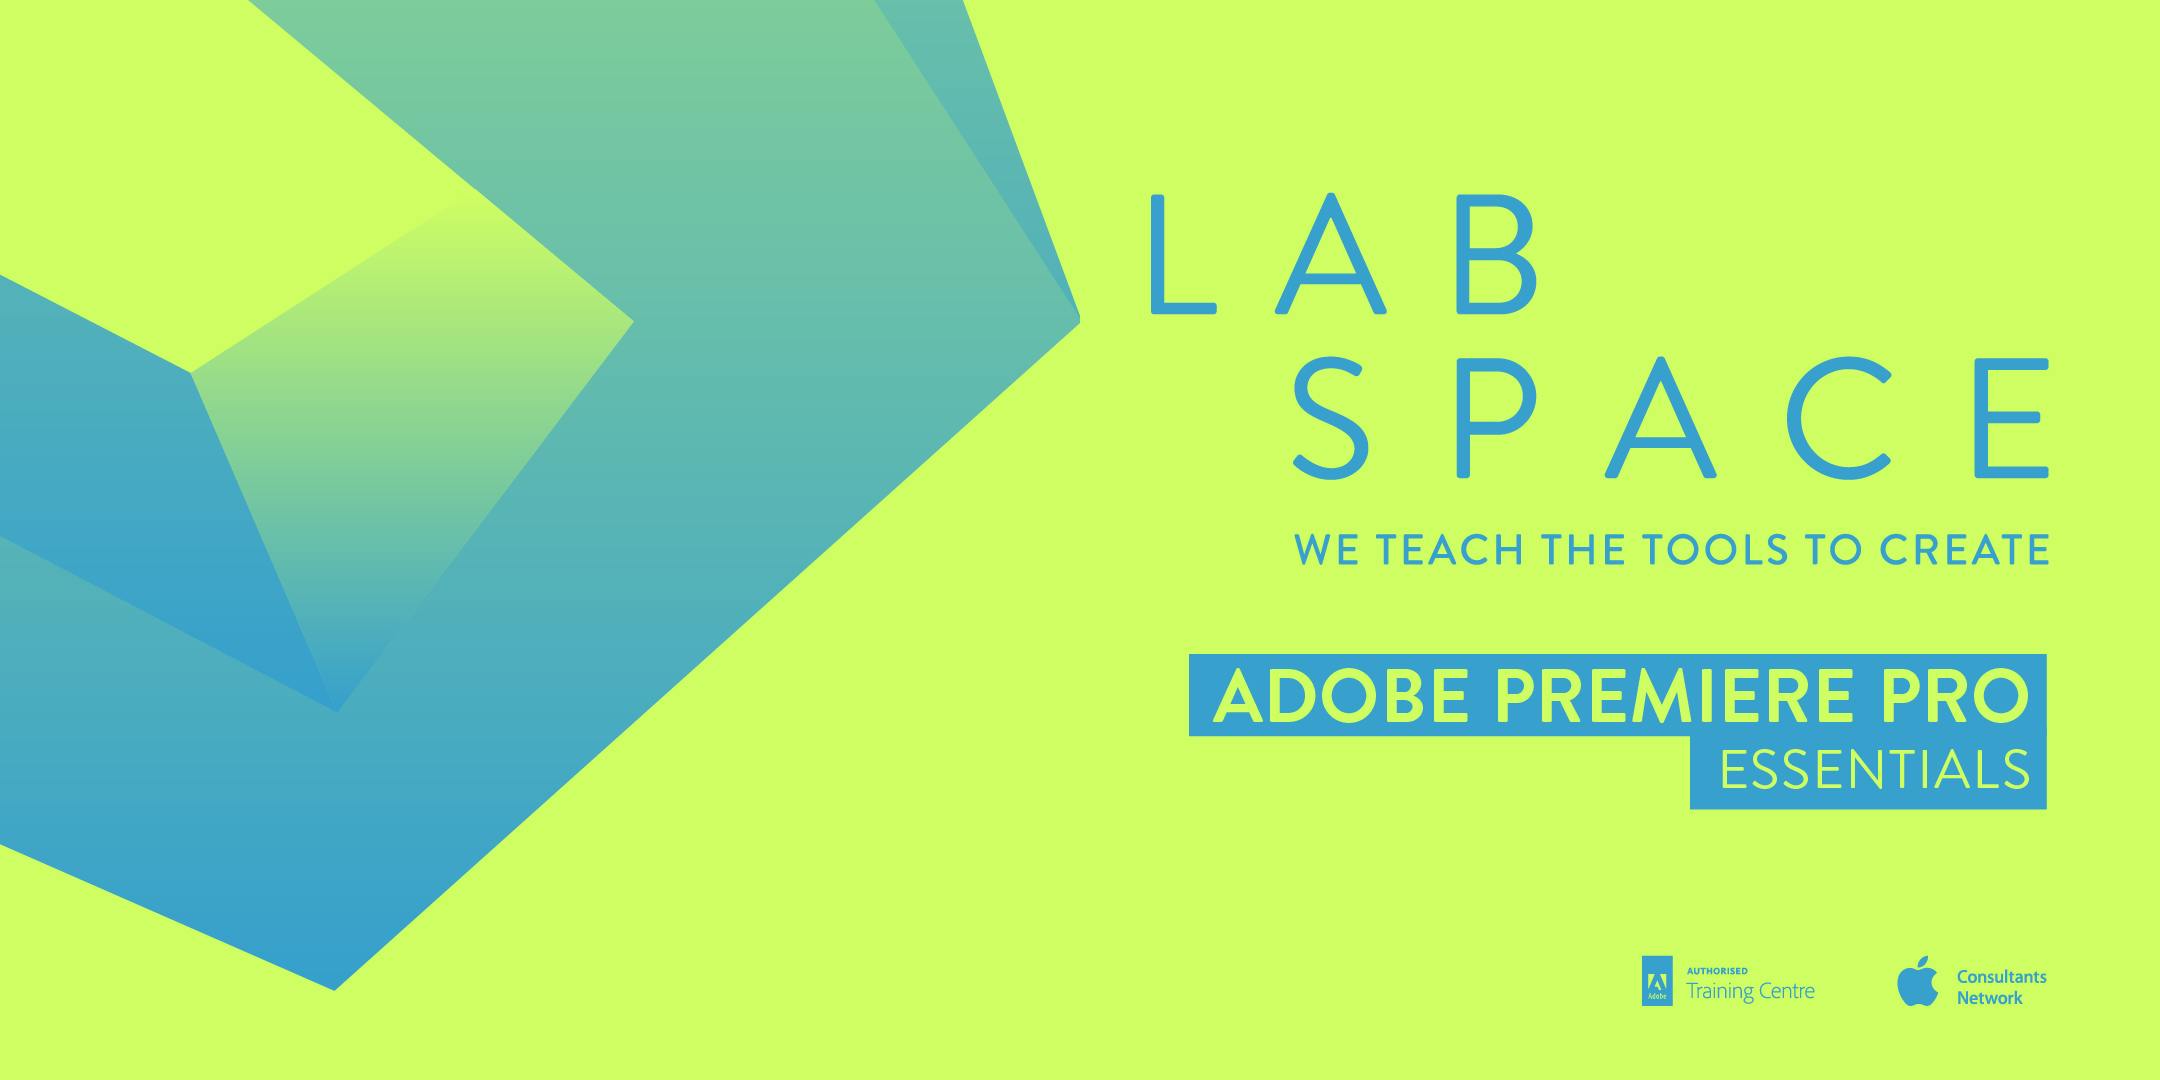 Adobe Premiere Pro Essentials Course PERTH LS